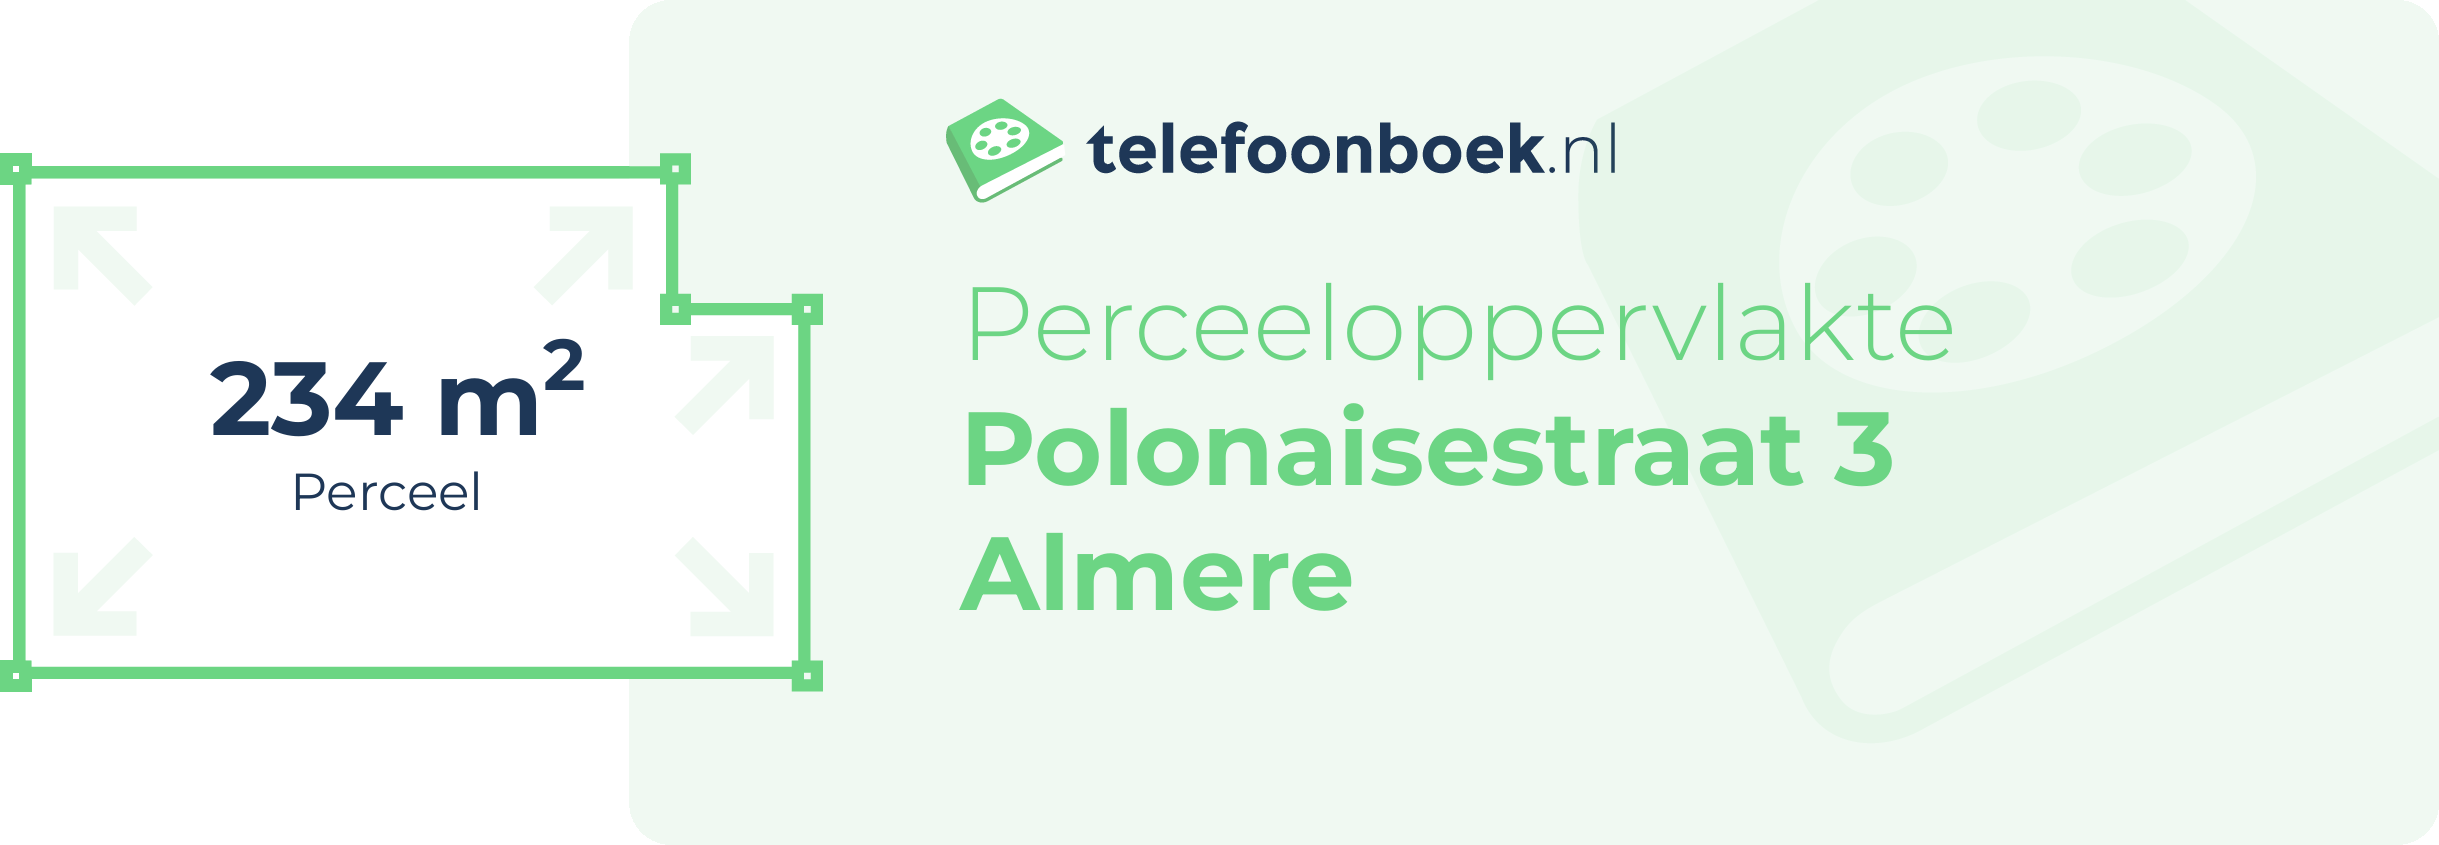 Perceeloppervlakte Polonaisestraat 3 Almere